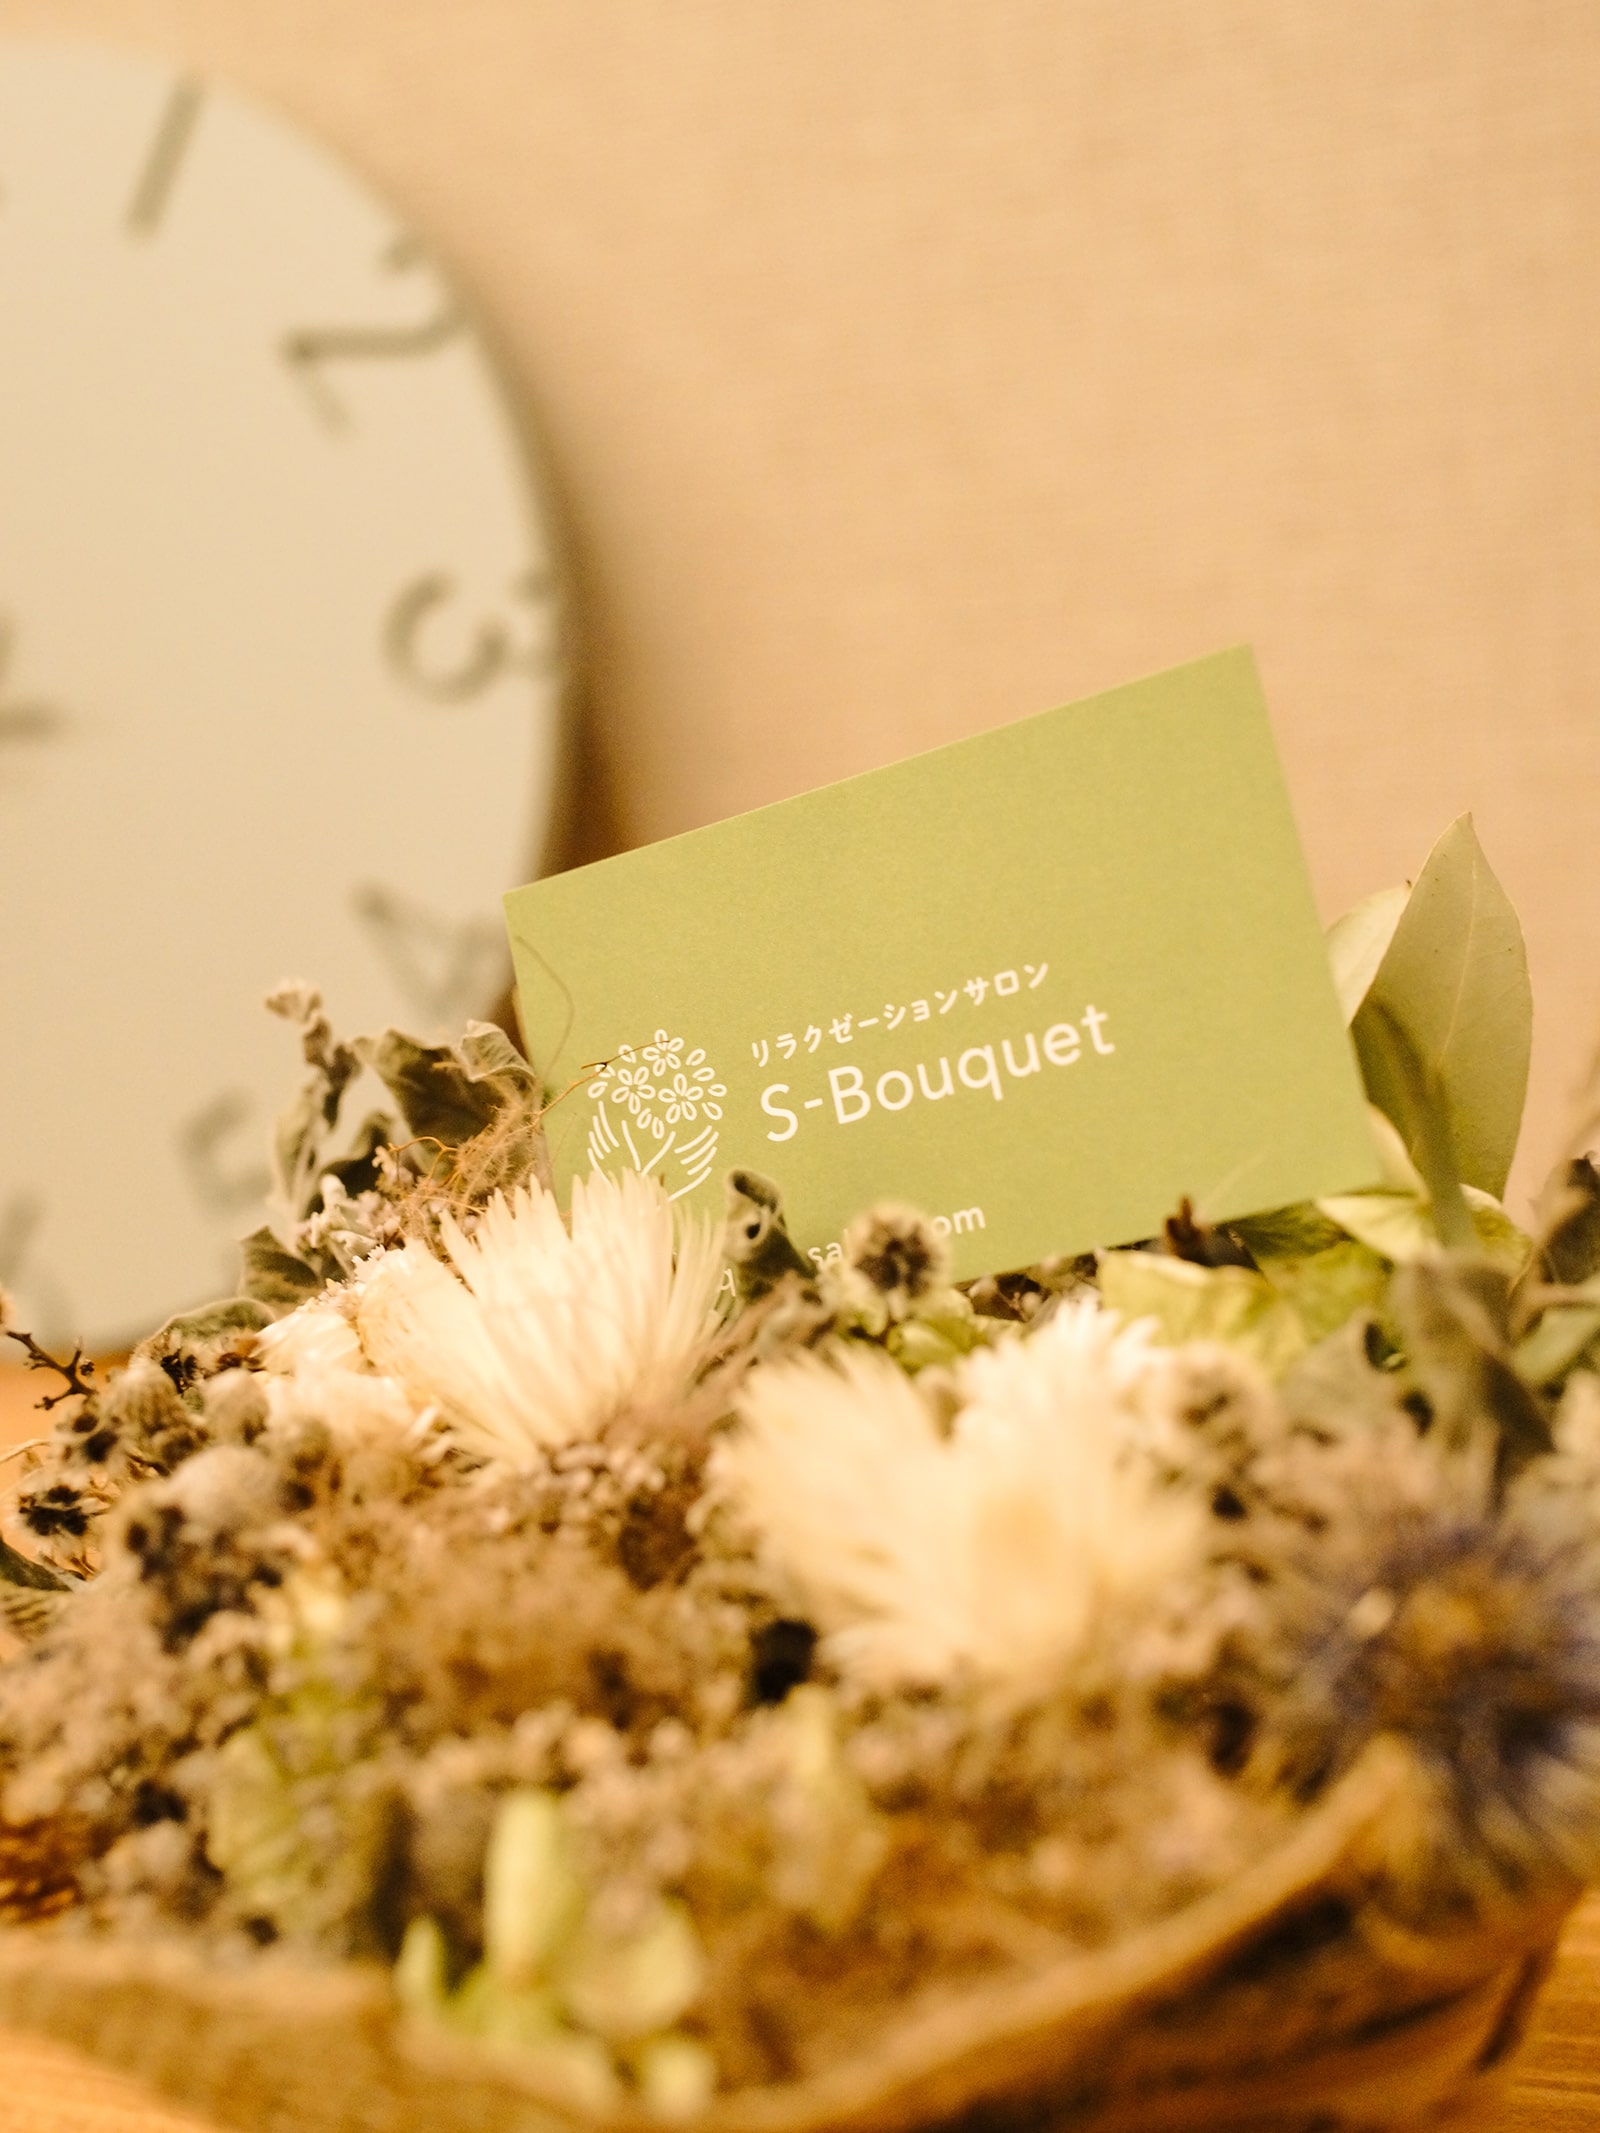 s-bouquet image